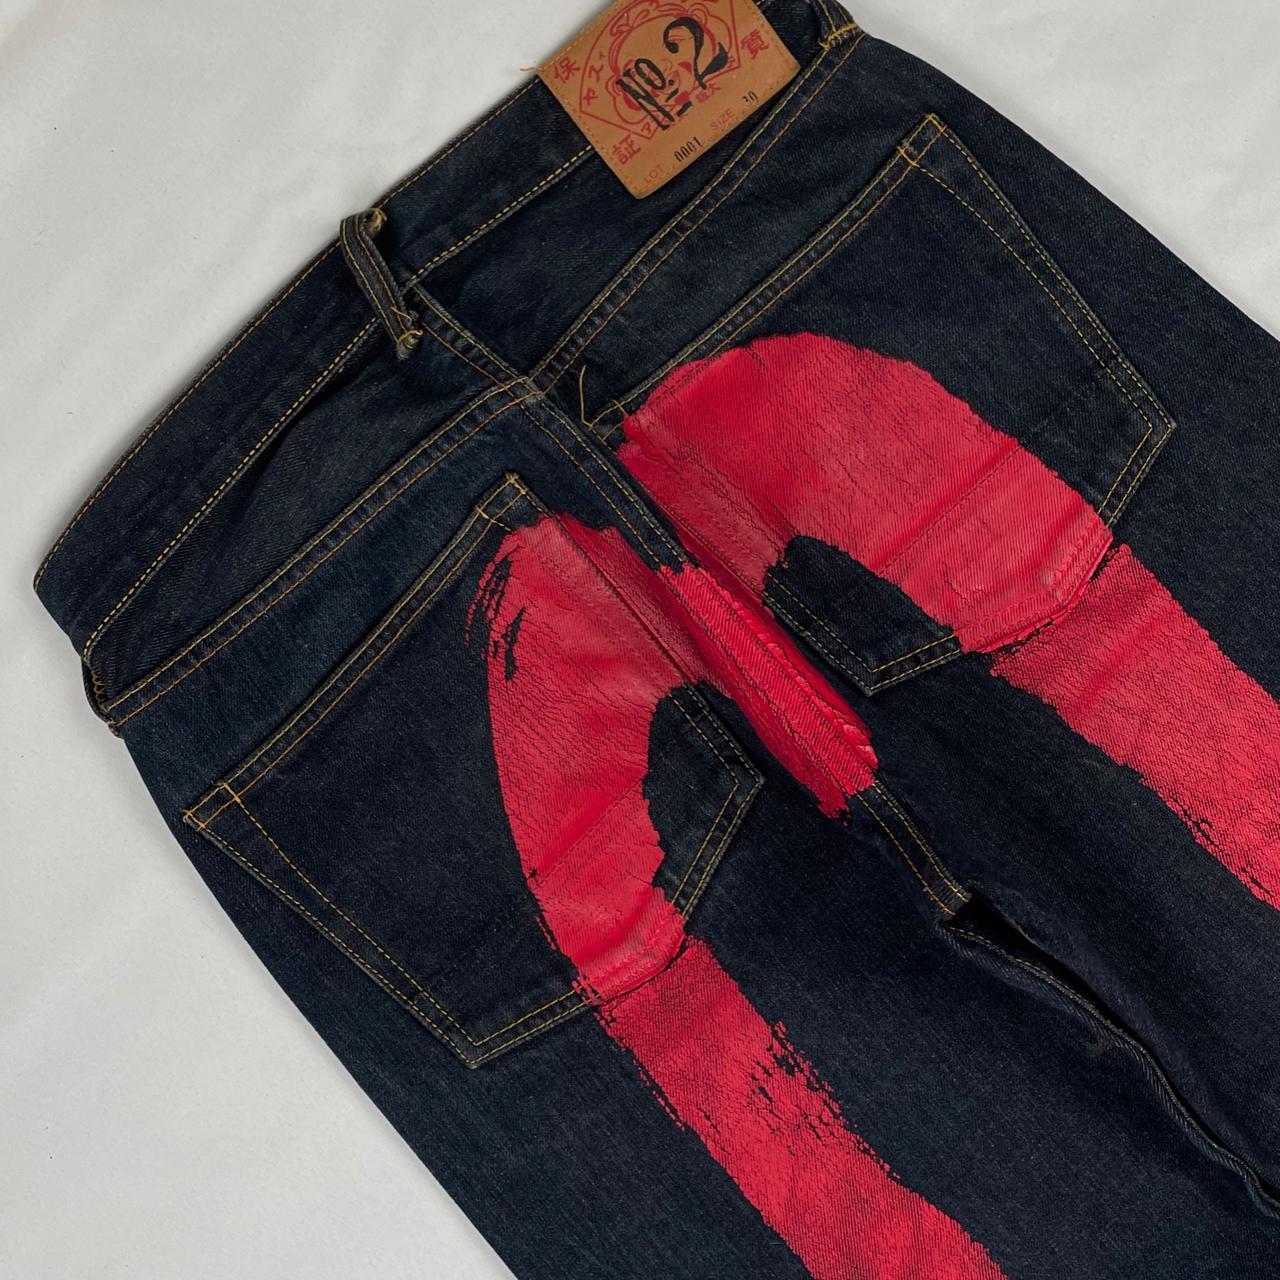 Authentic Vintage Diacock Evisu Jeans  (29")